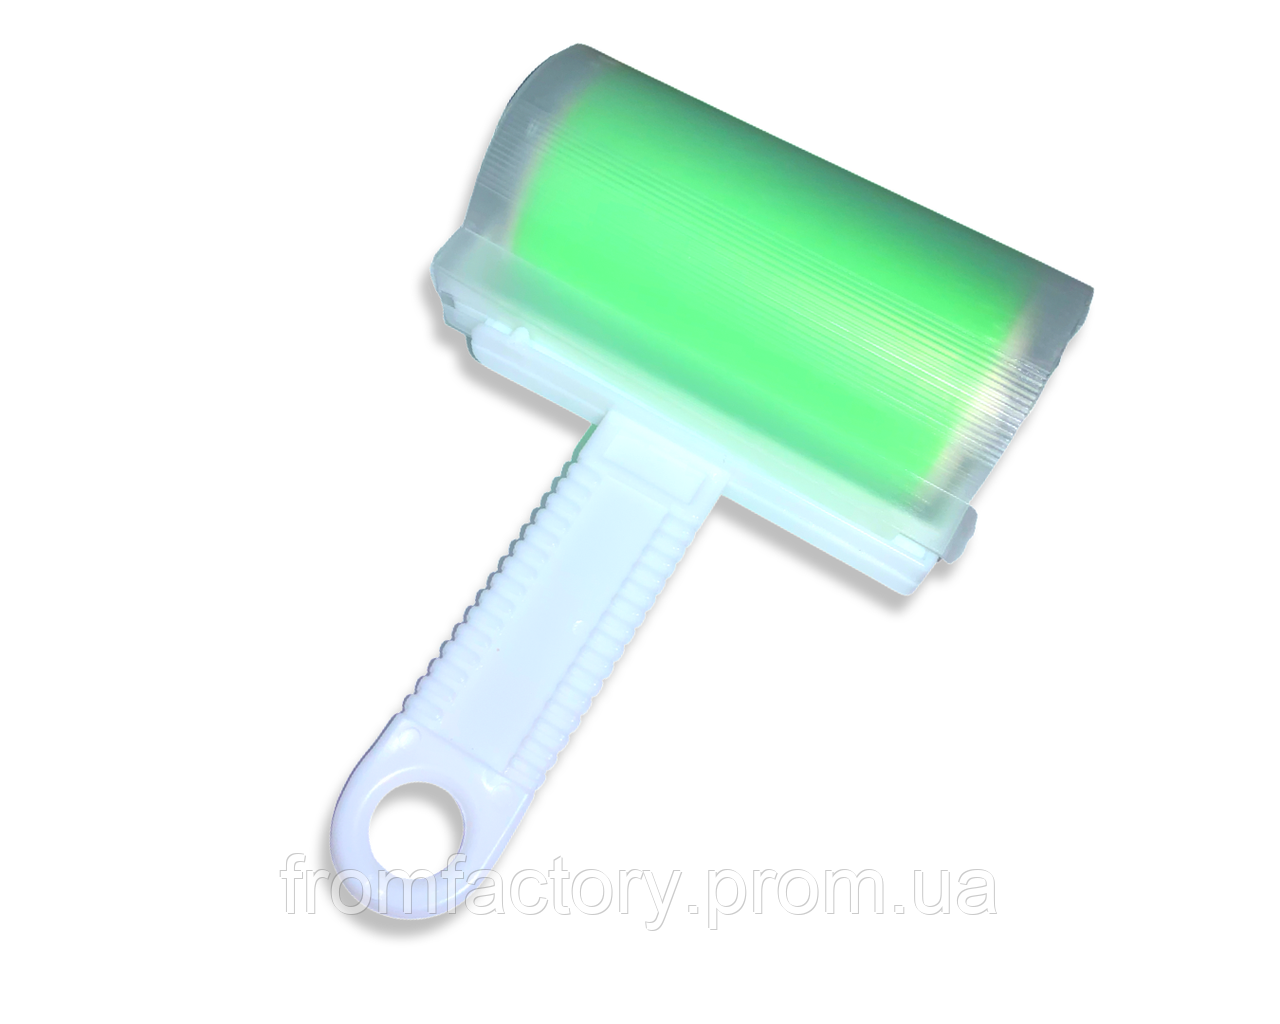 Ролик для чищення одягу силіконовий без відривань у чохлі 17см:Зелений